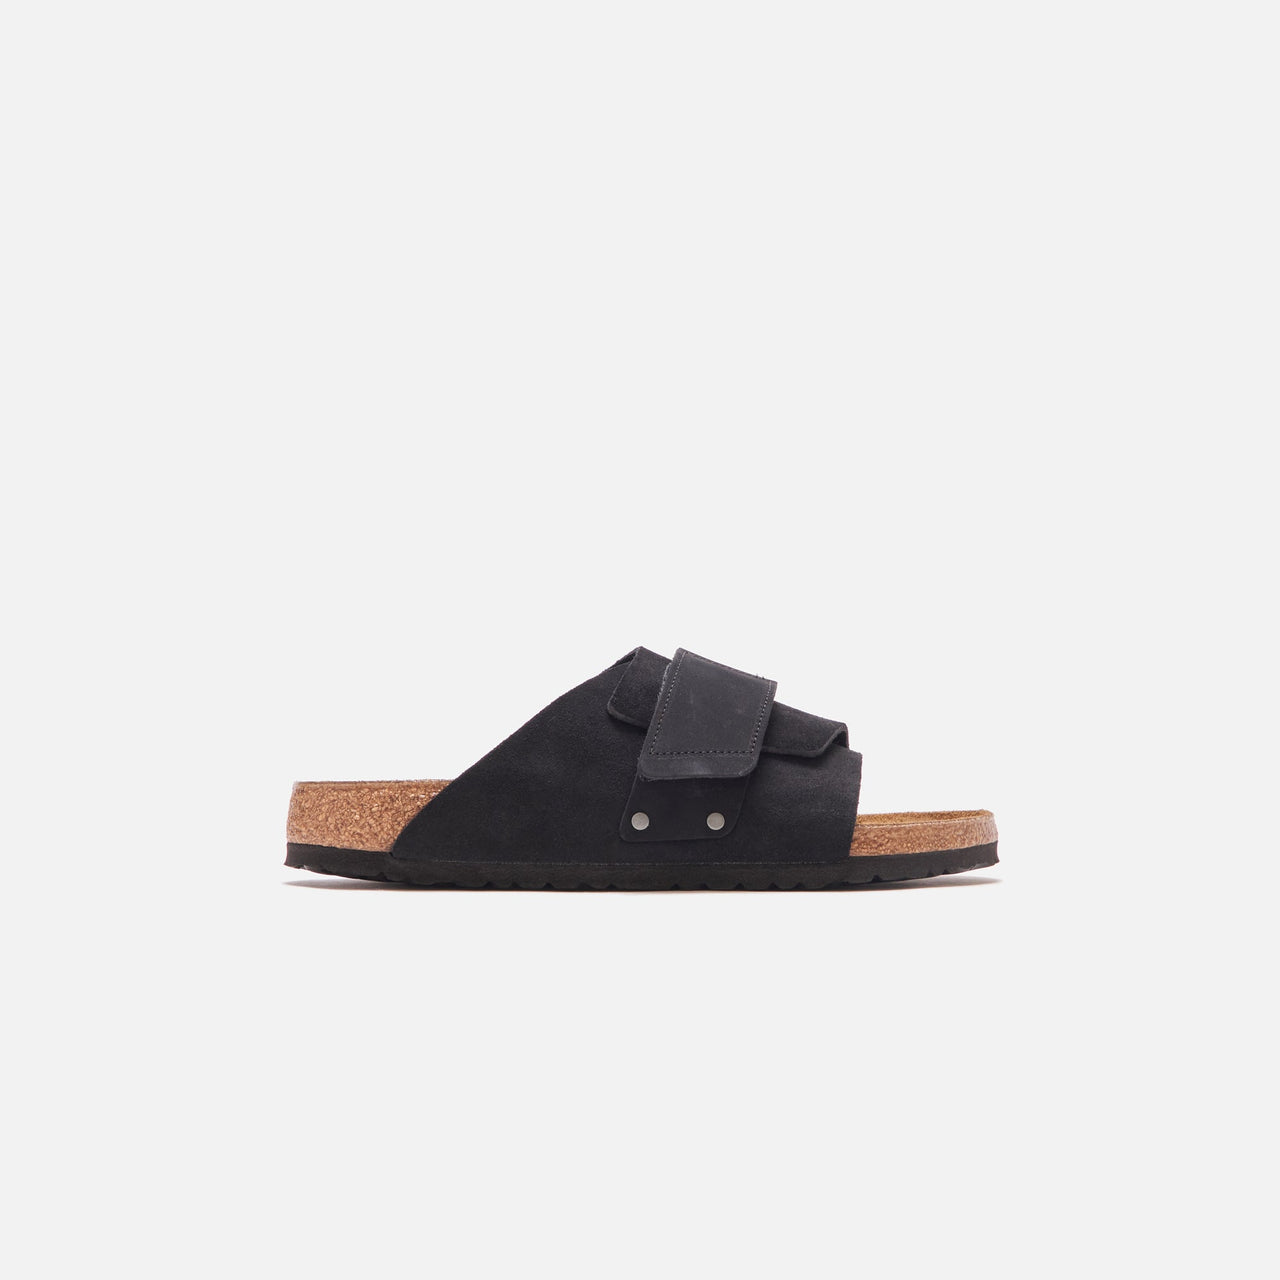 Birkenstock Kyoto Suede Black sandal with adjustable straps and contoured footbed